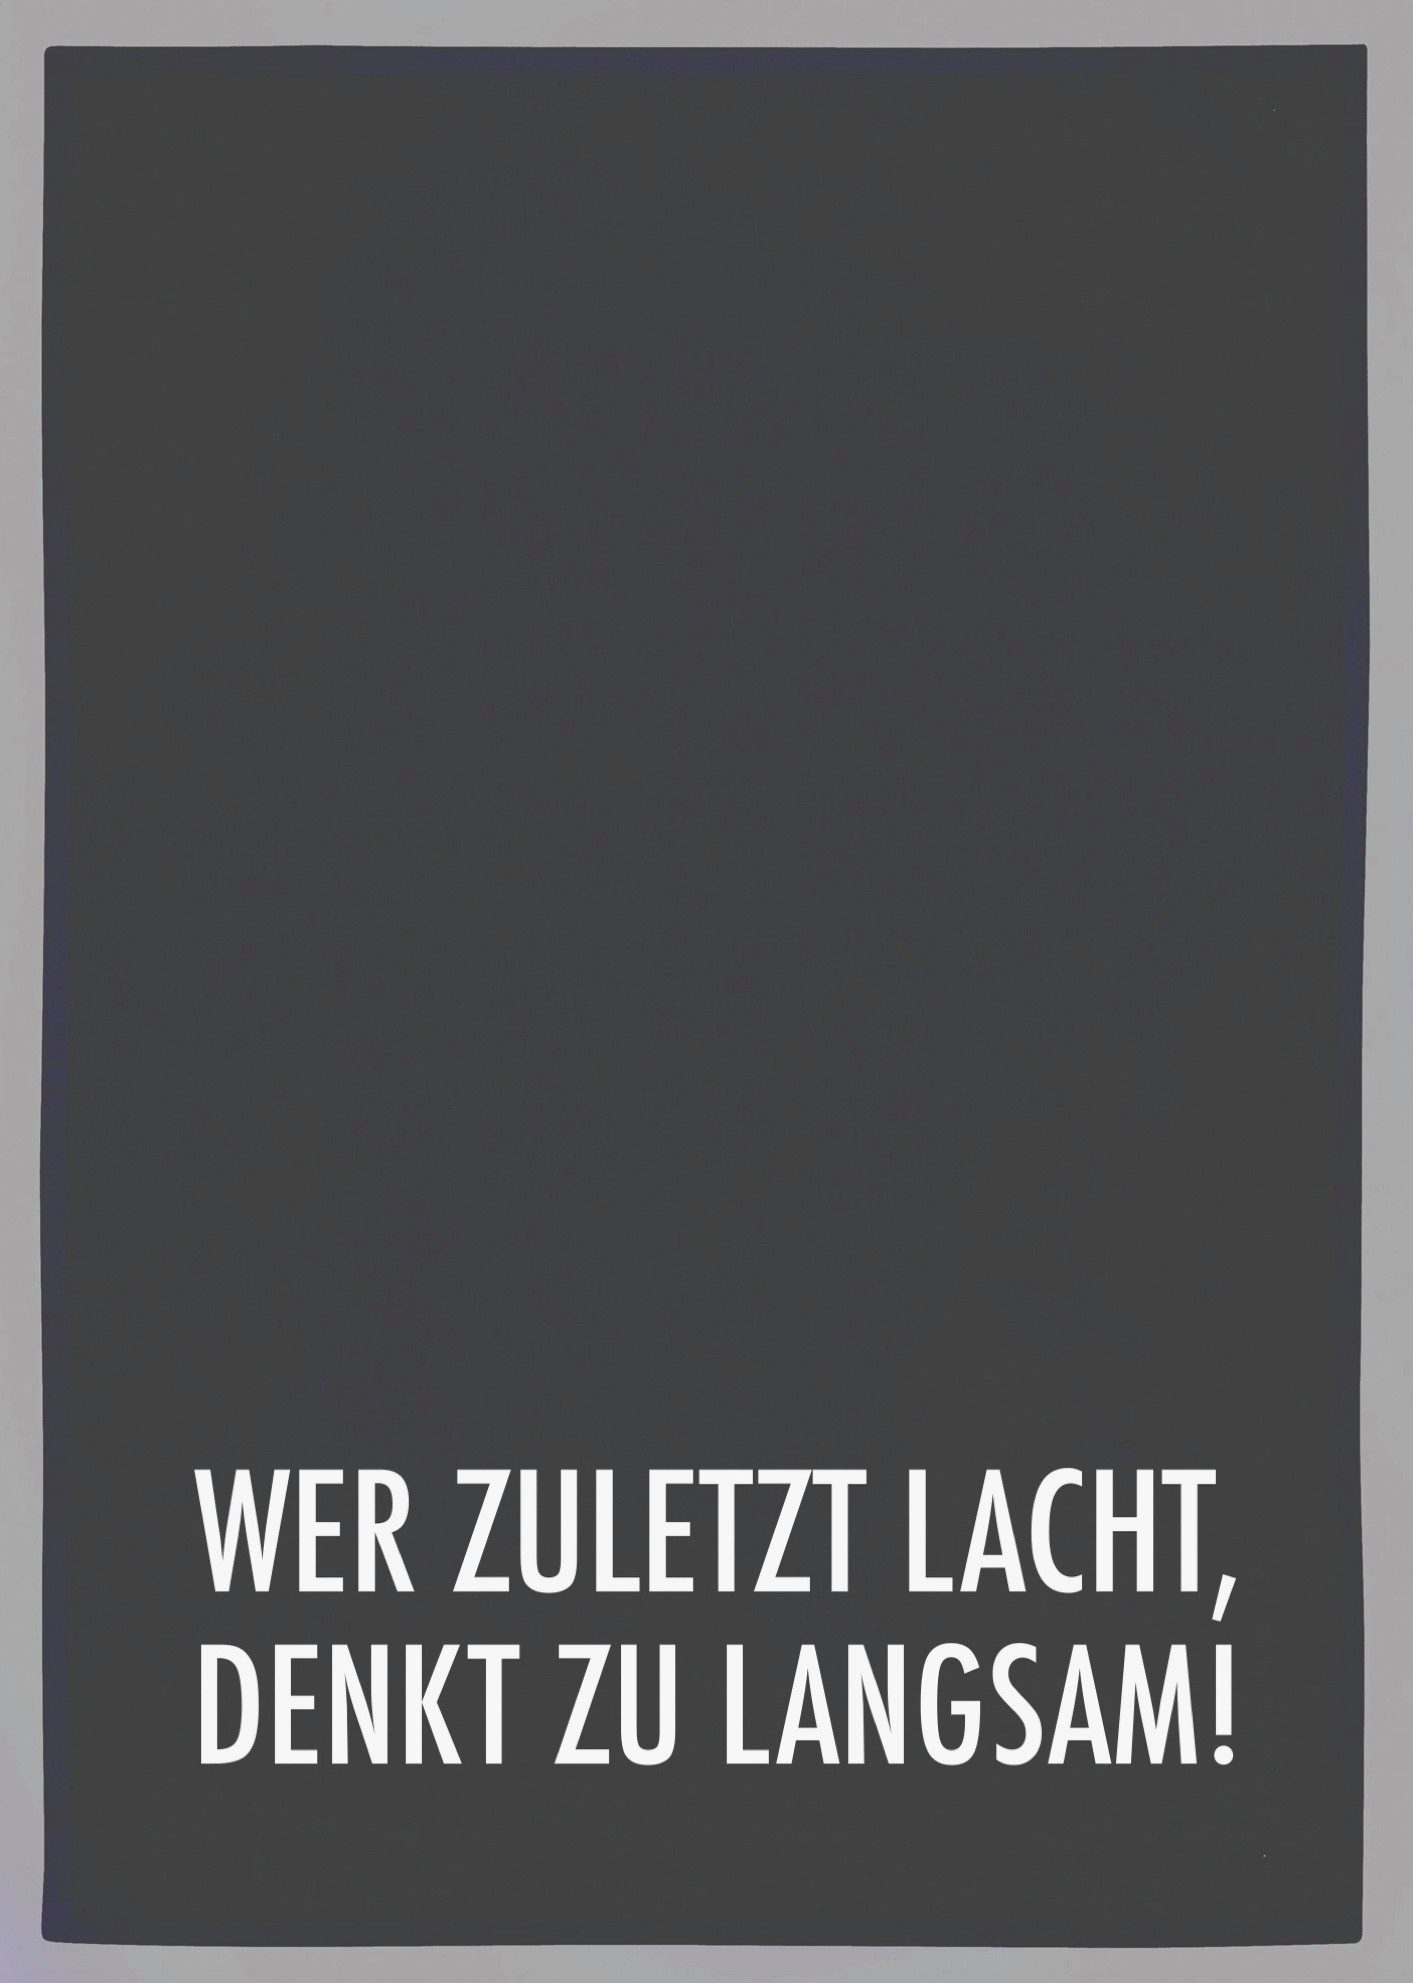 17;30 Hamburg Geschirrtuch Geschirrtuch grau WER ZULETZT LACHT weiß 70x50cm, aus 100% Baumwolle